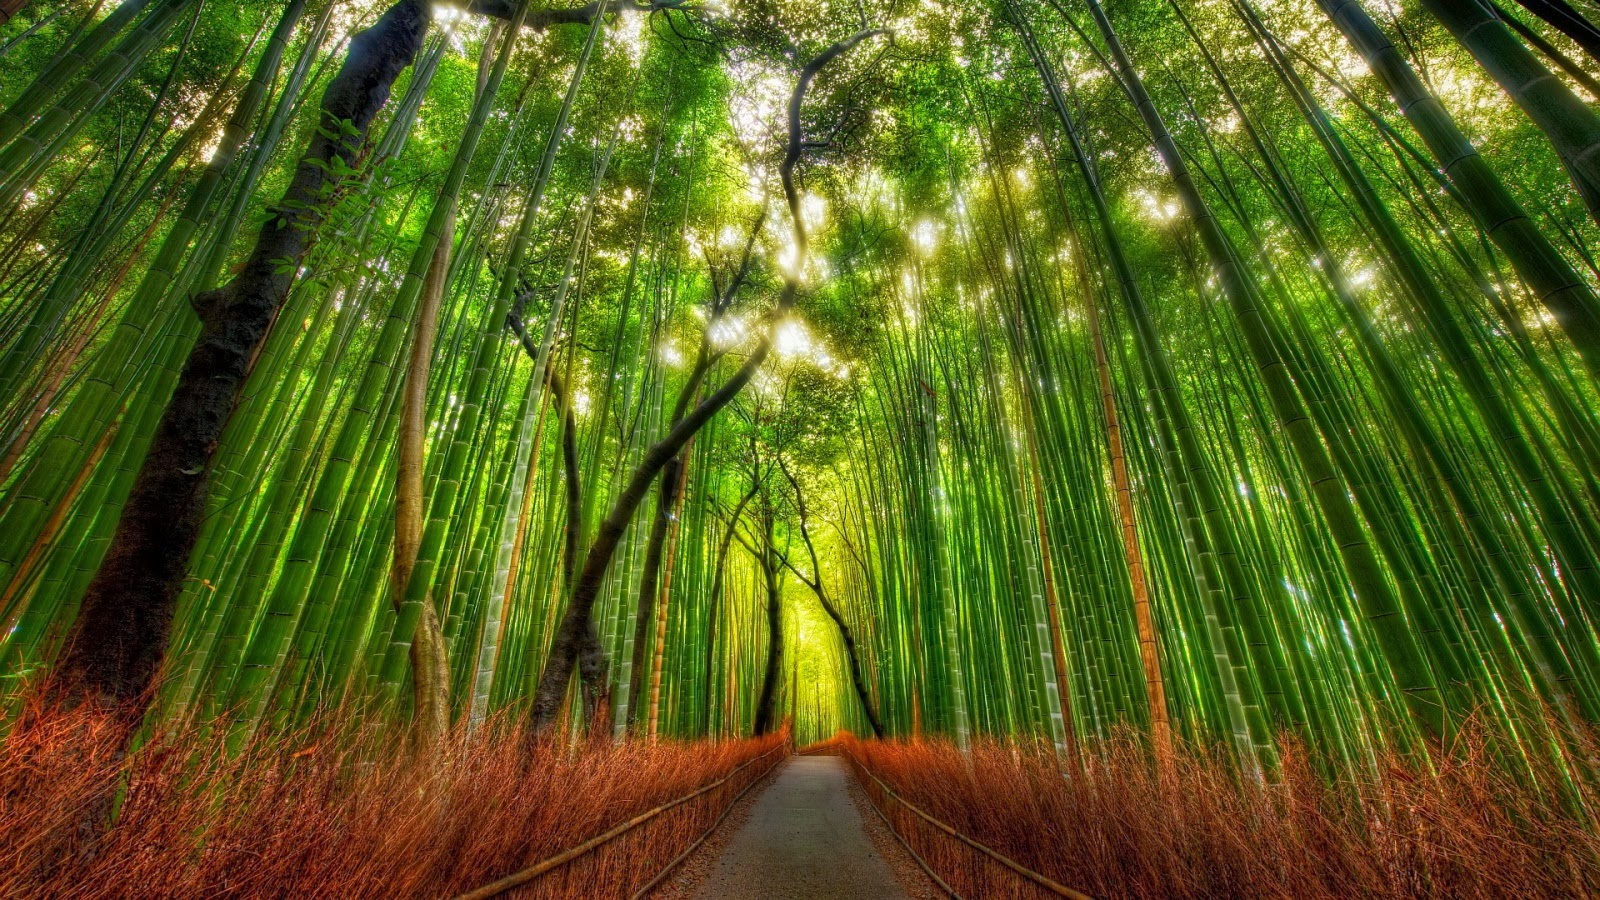 竹の壁紙,自然の風景,自然,緑,木,竹